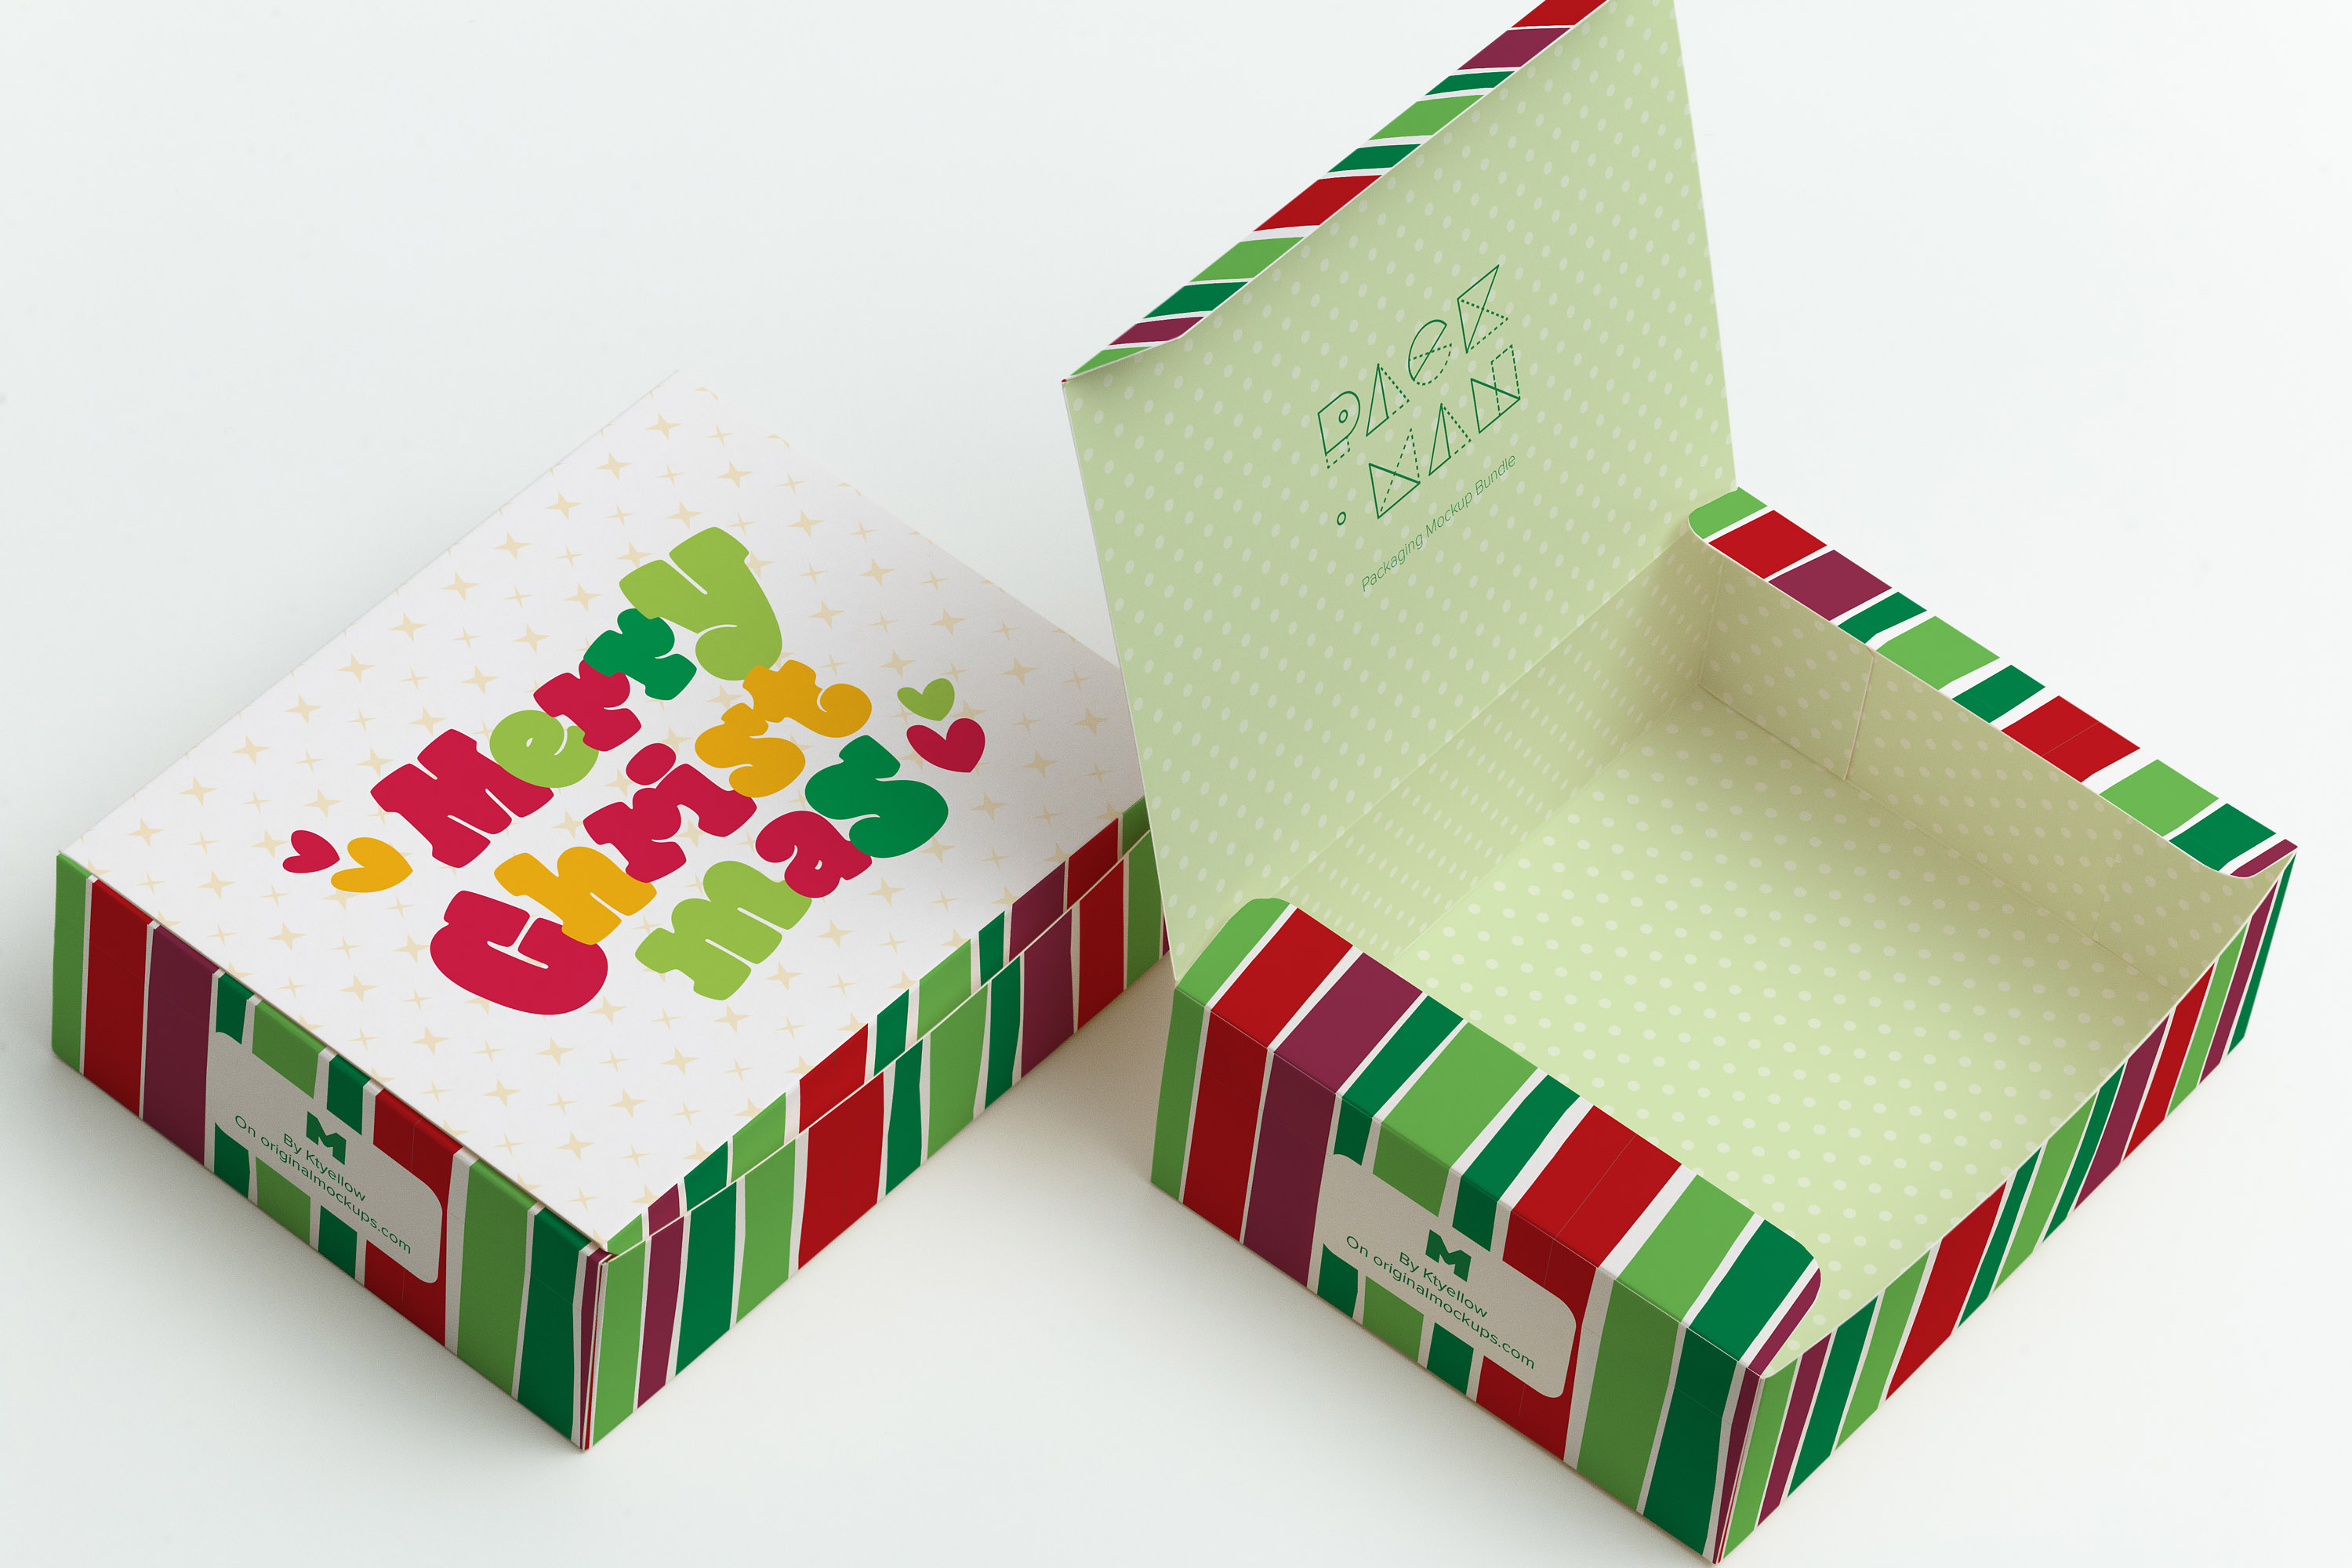 甜品糕点包装盒外观设计效果图样机06 Sweet Box Mockup 06插图